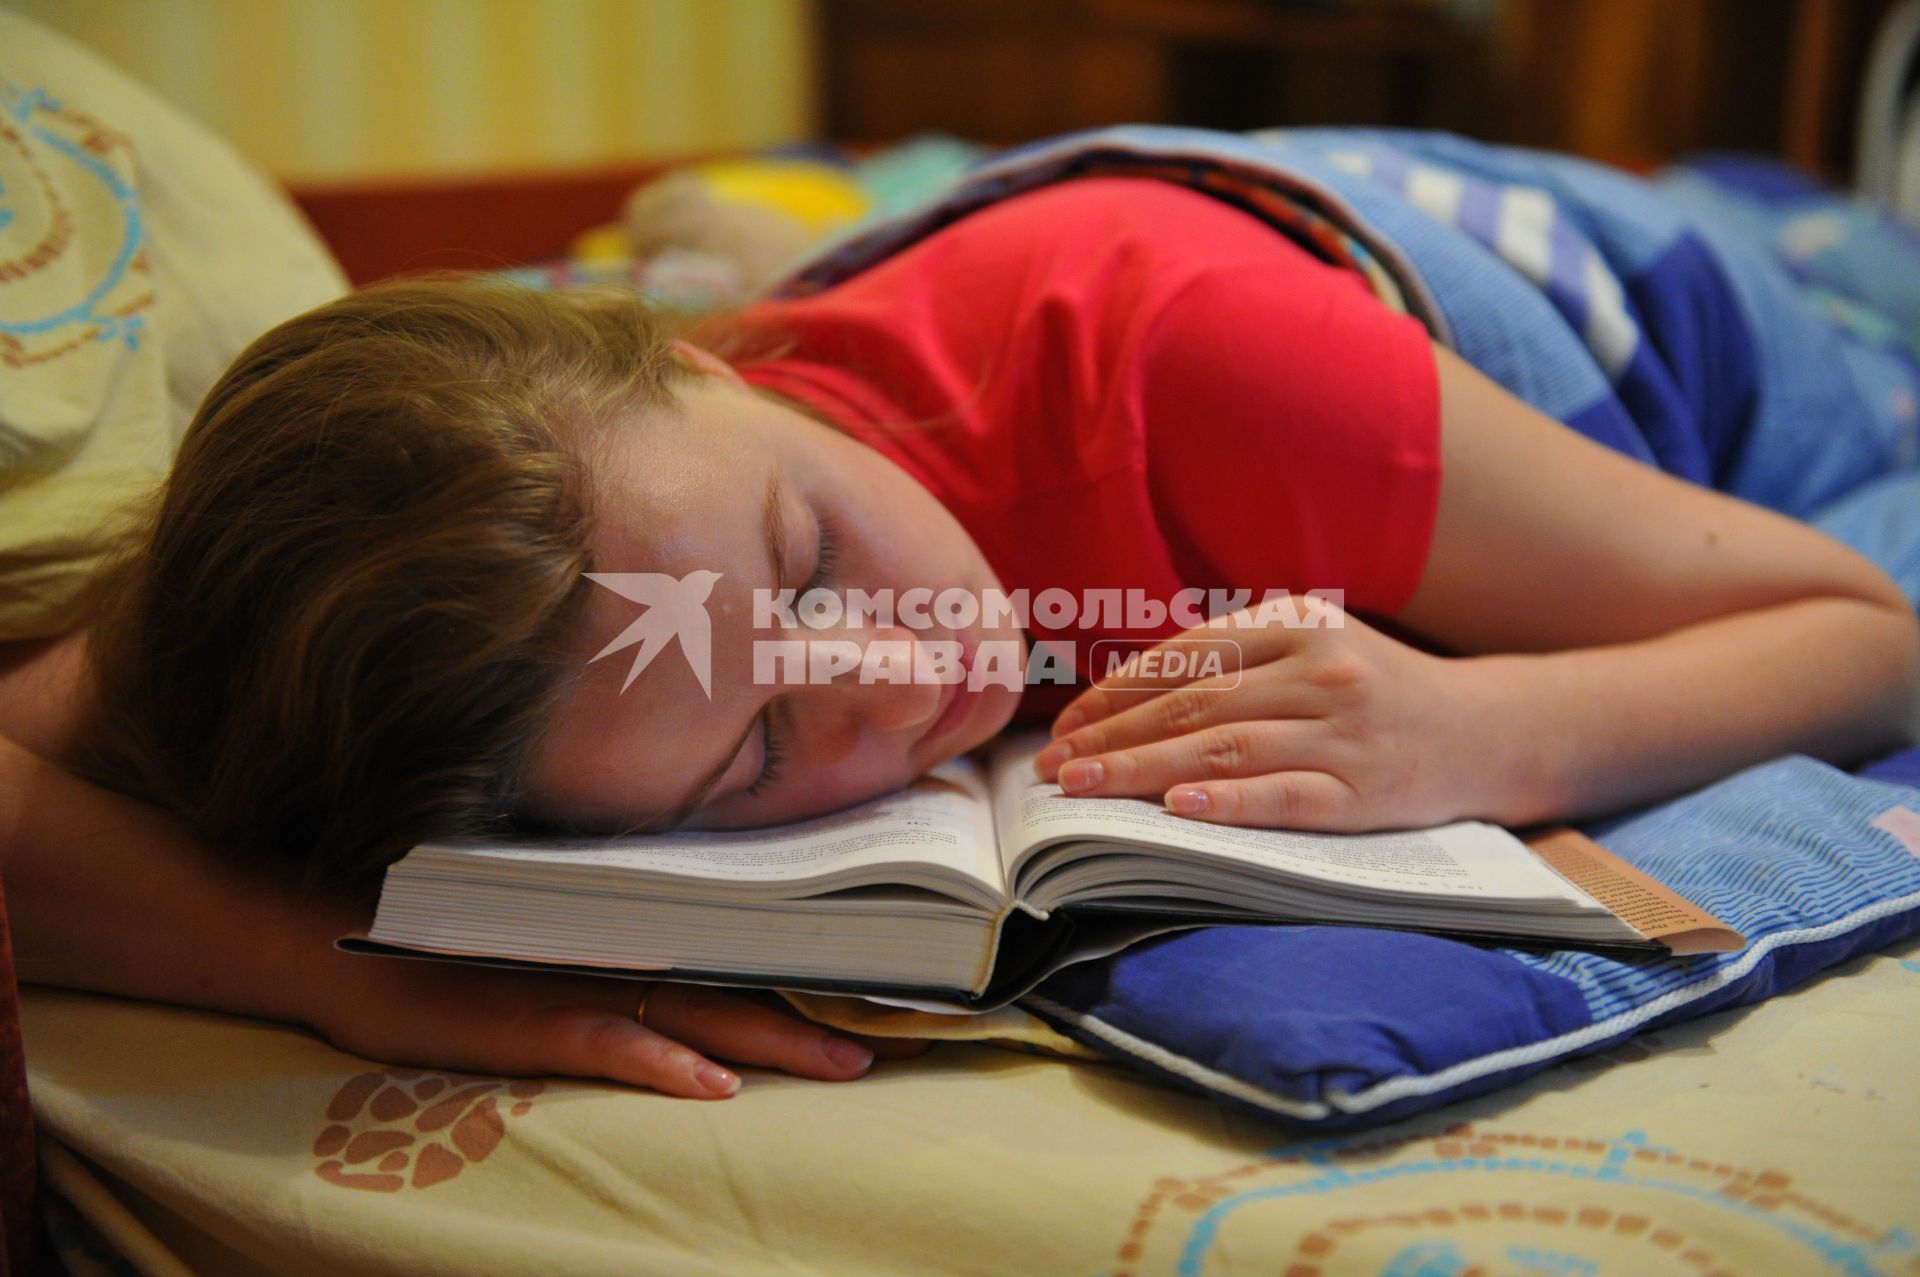 Здоровый сон. Женщина уснула за книгой. 19 января 2012.